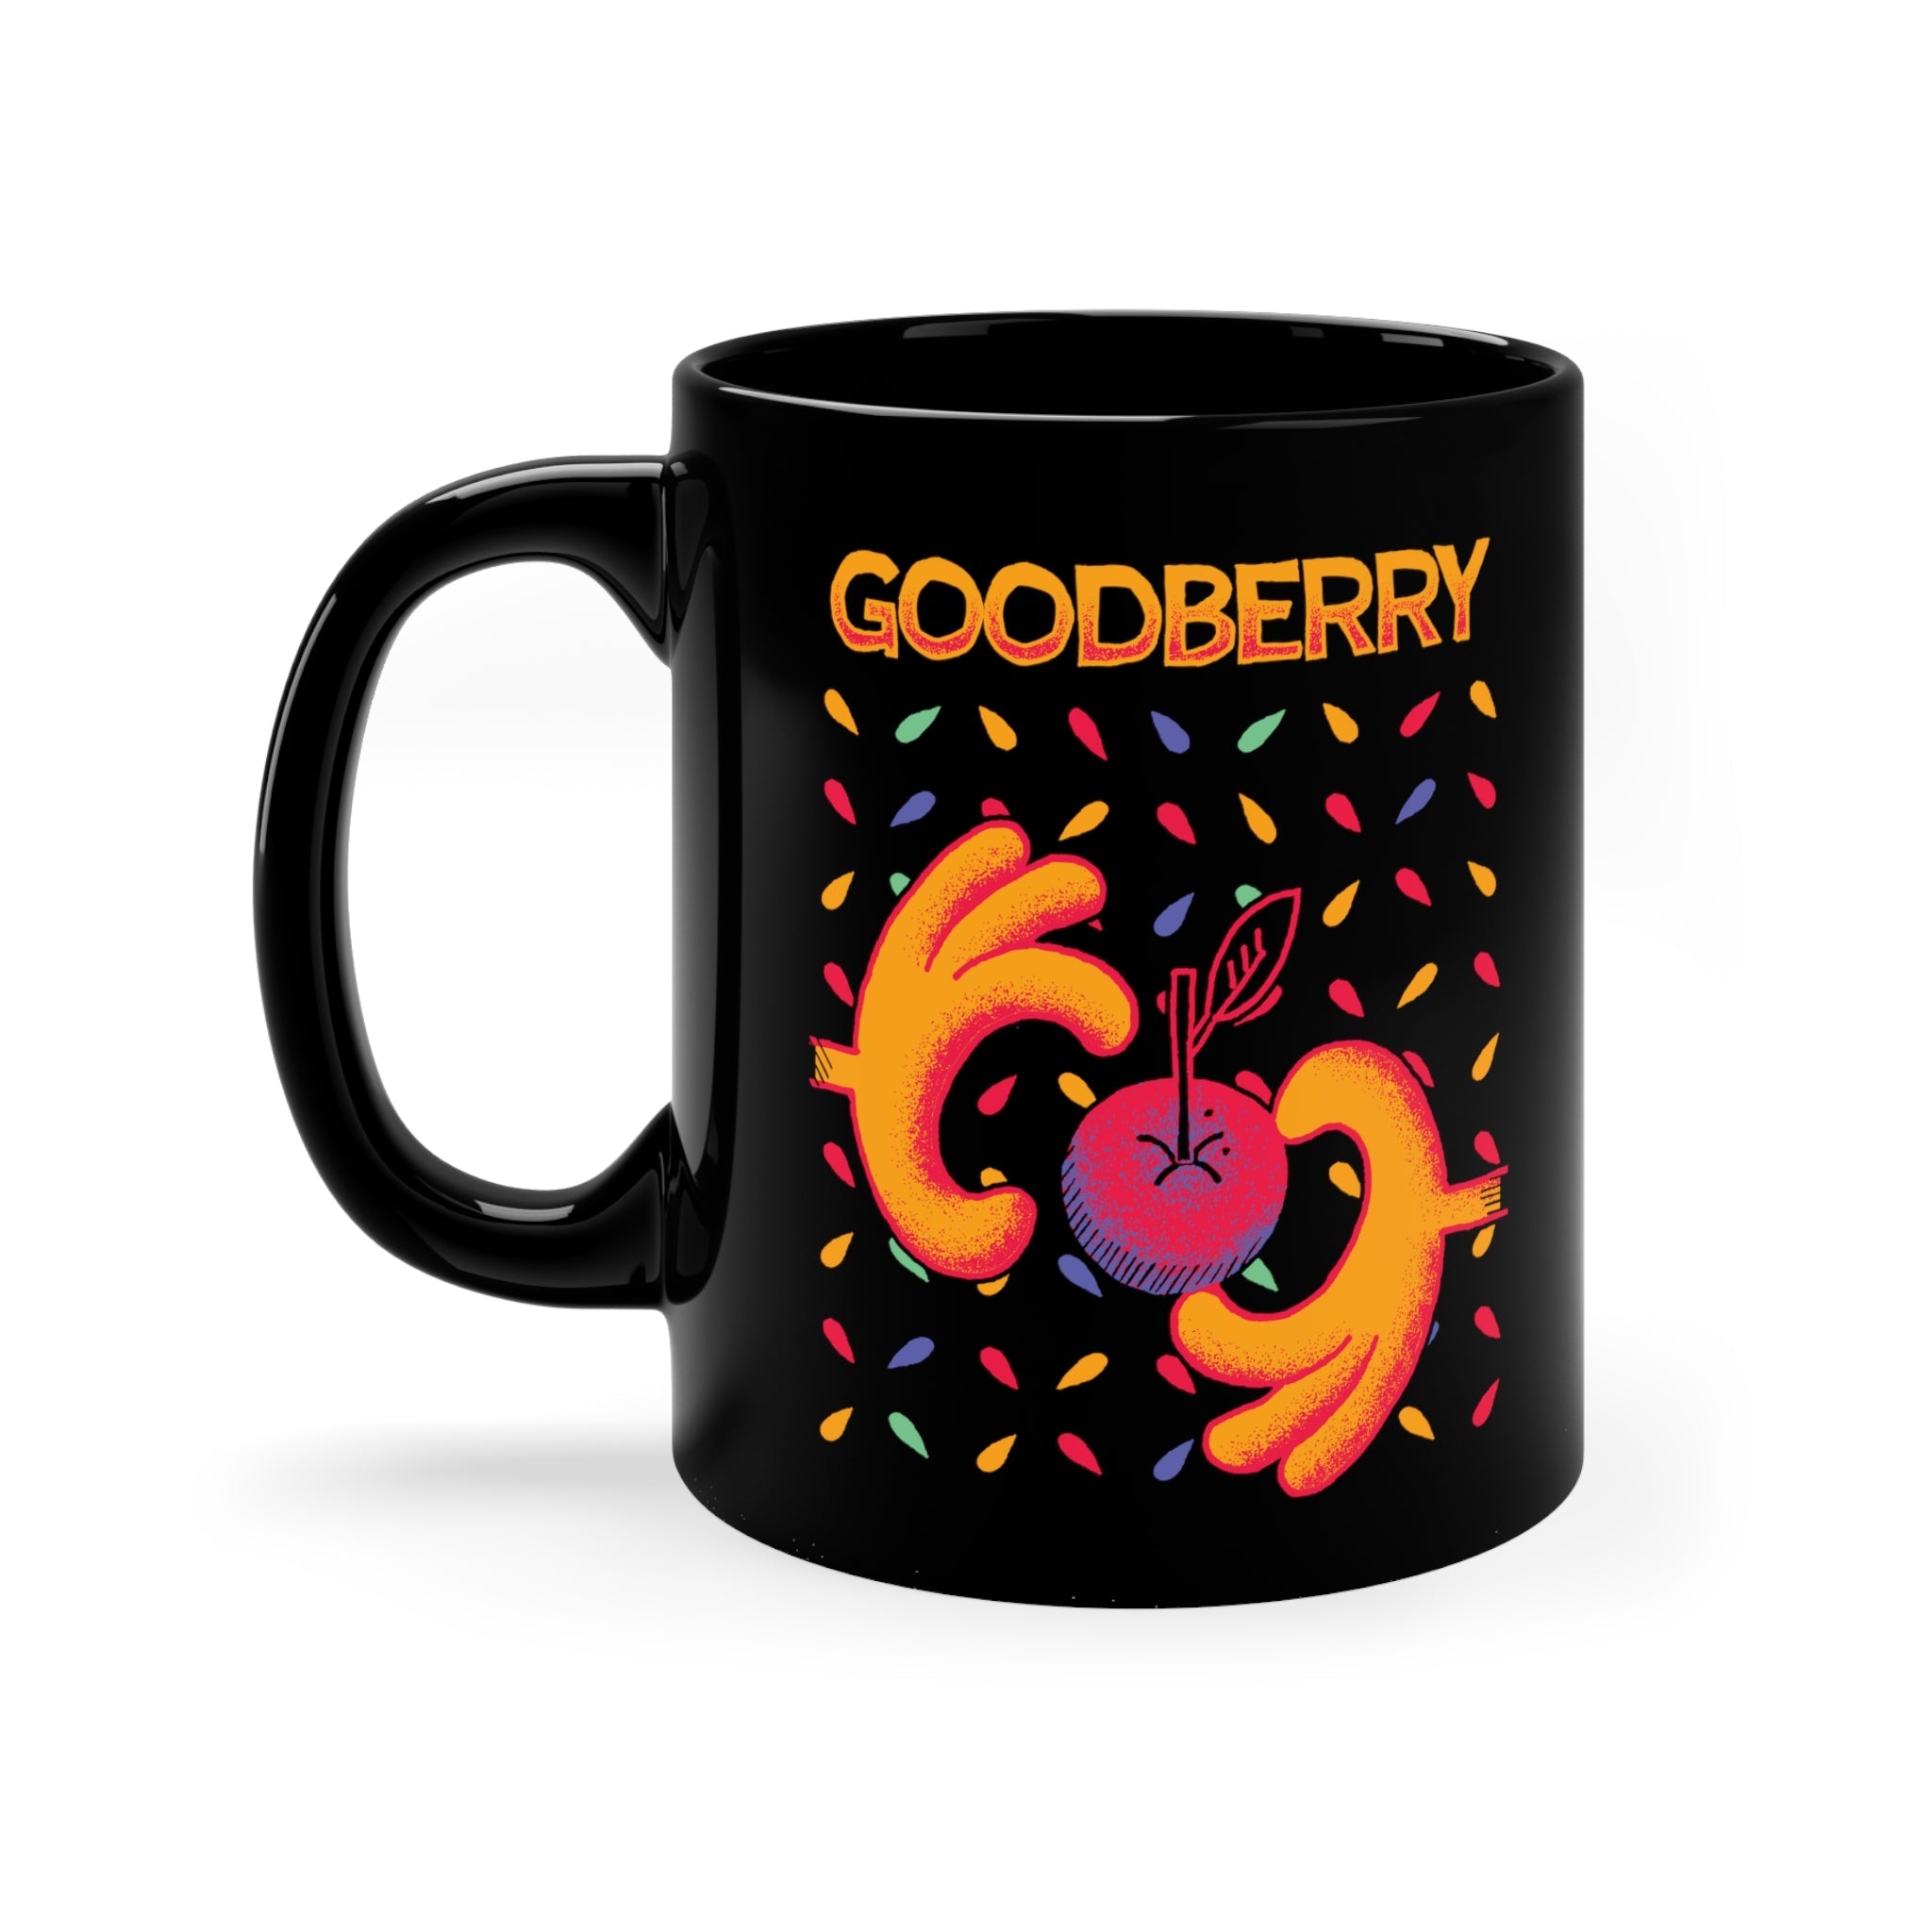 Goodberry | Black Mug 11oz - Mug - Ace of Gnomes - 32712385991218773676